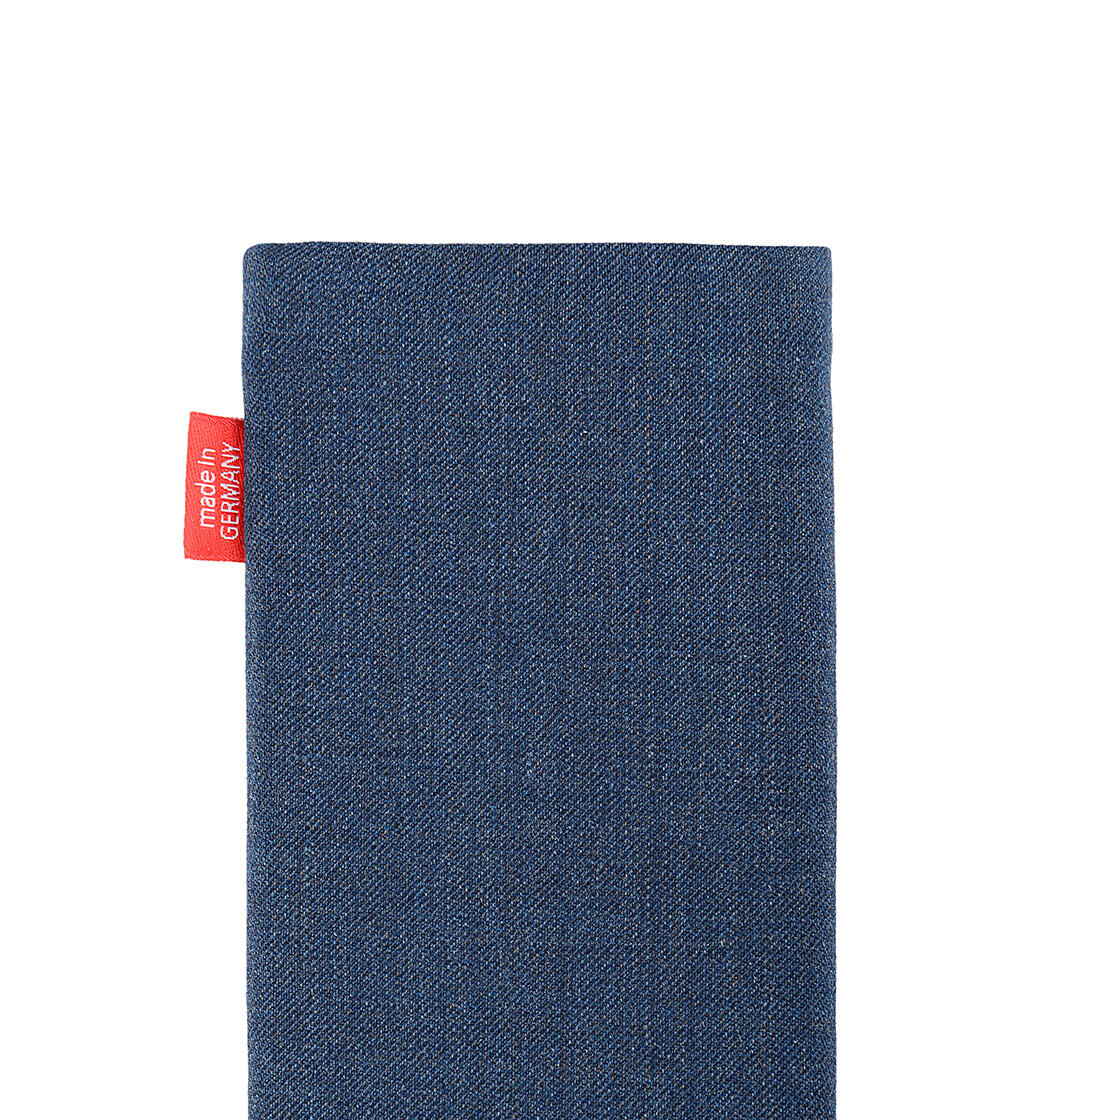 Hülle mit Reinigungsfunktion fitBAG Jive Blau Handytasche Tasche aus Textil-Stoff mit Microfaserinnenfutter für Nokia 7.1 Made in Germany 